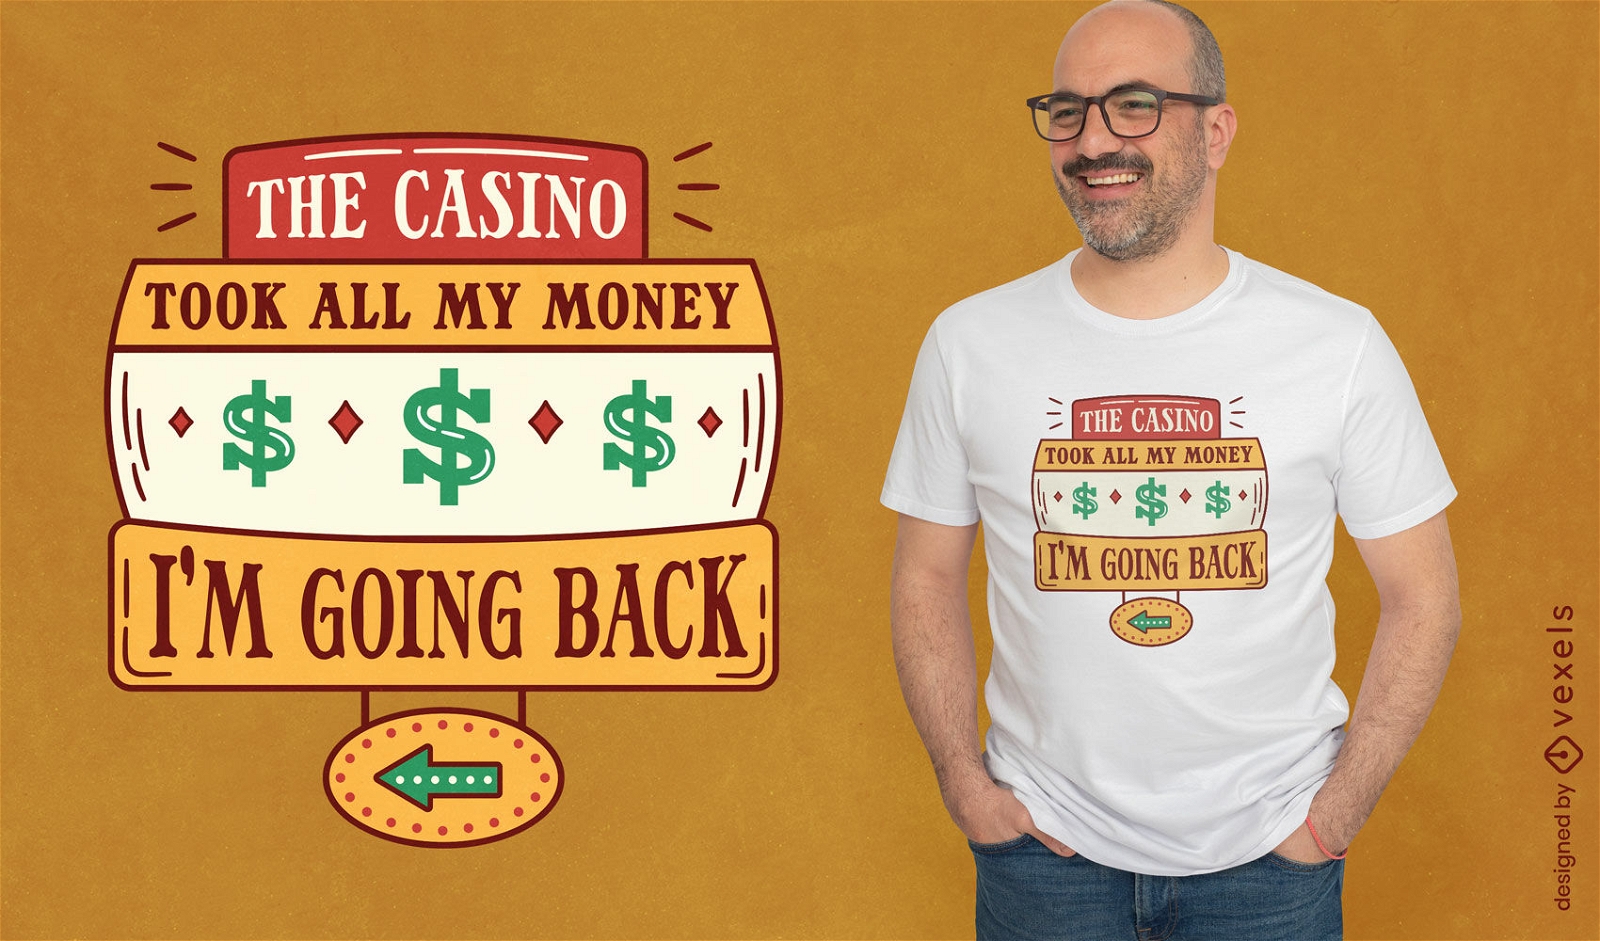 Casino humor statement t-shirt design